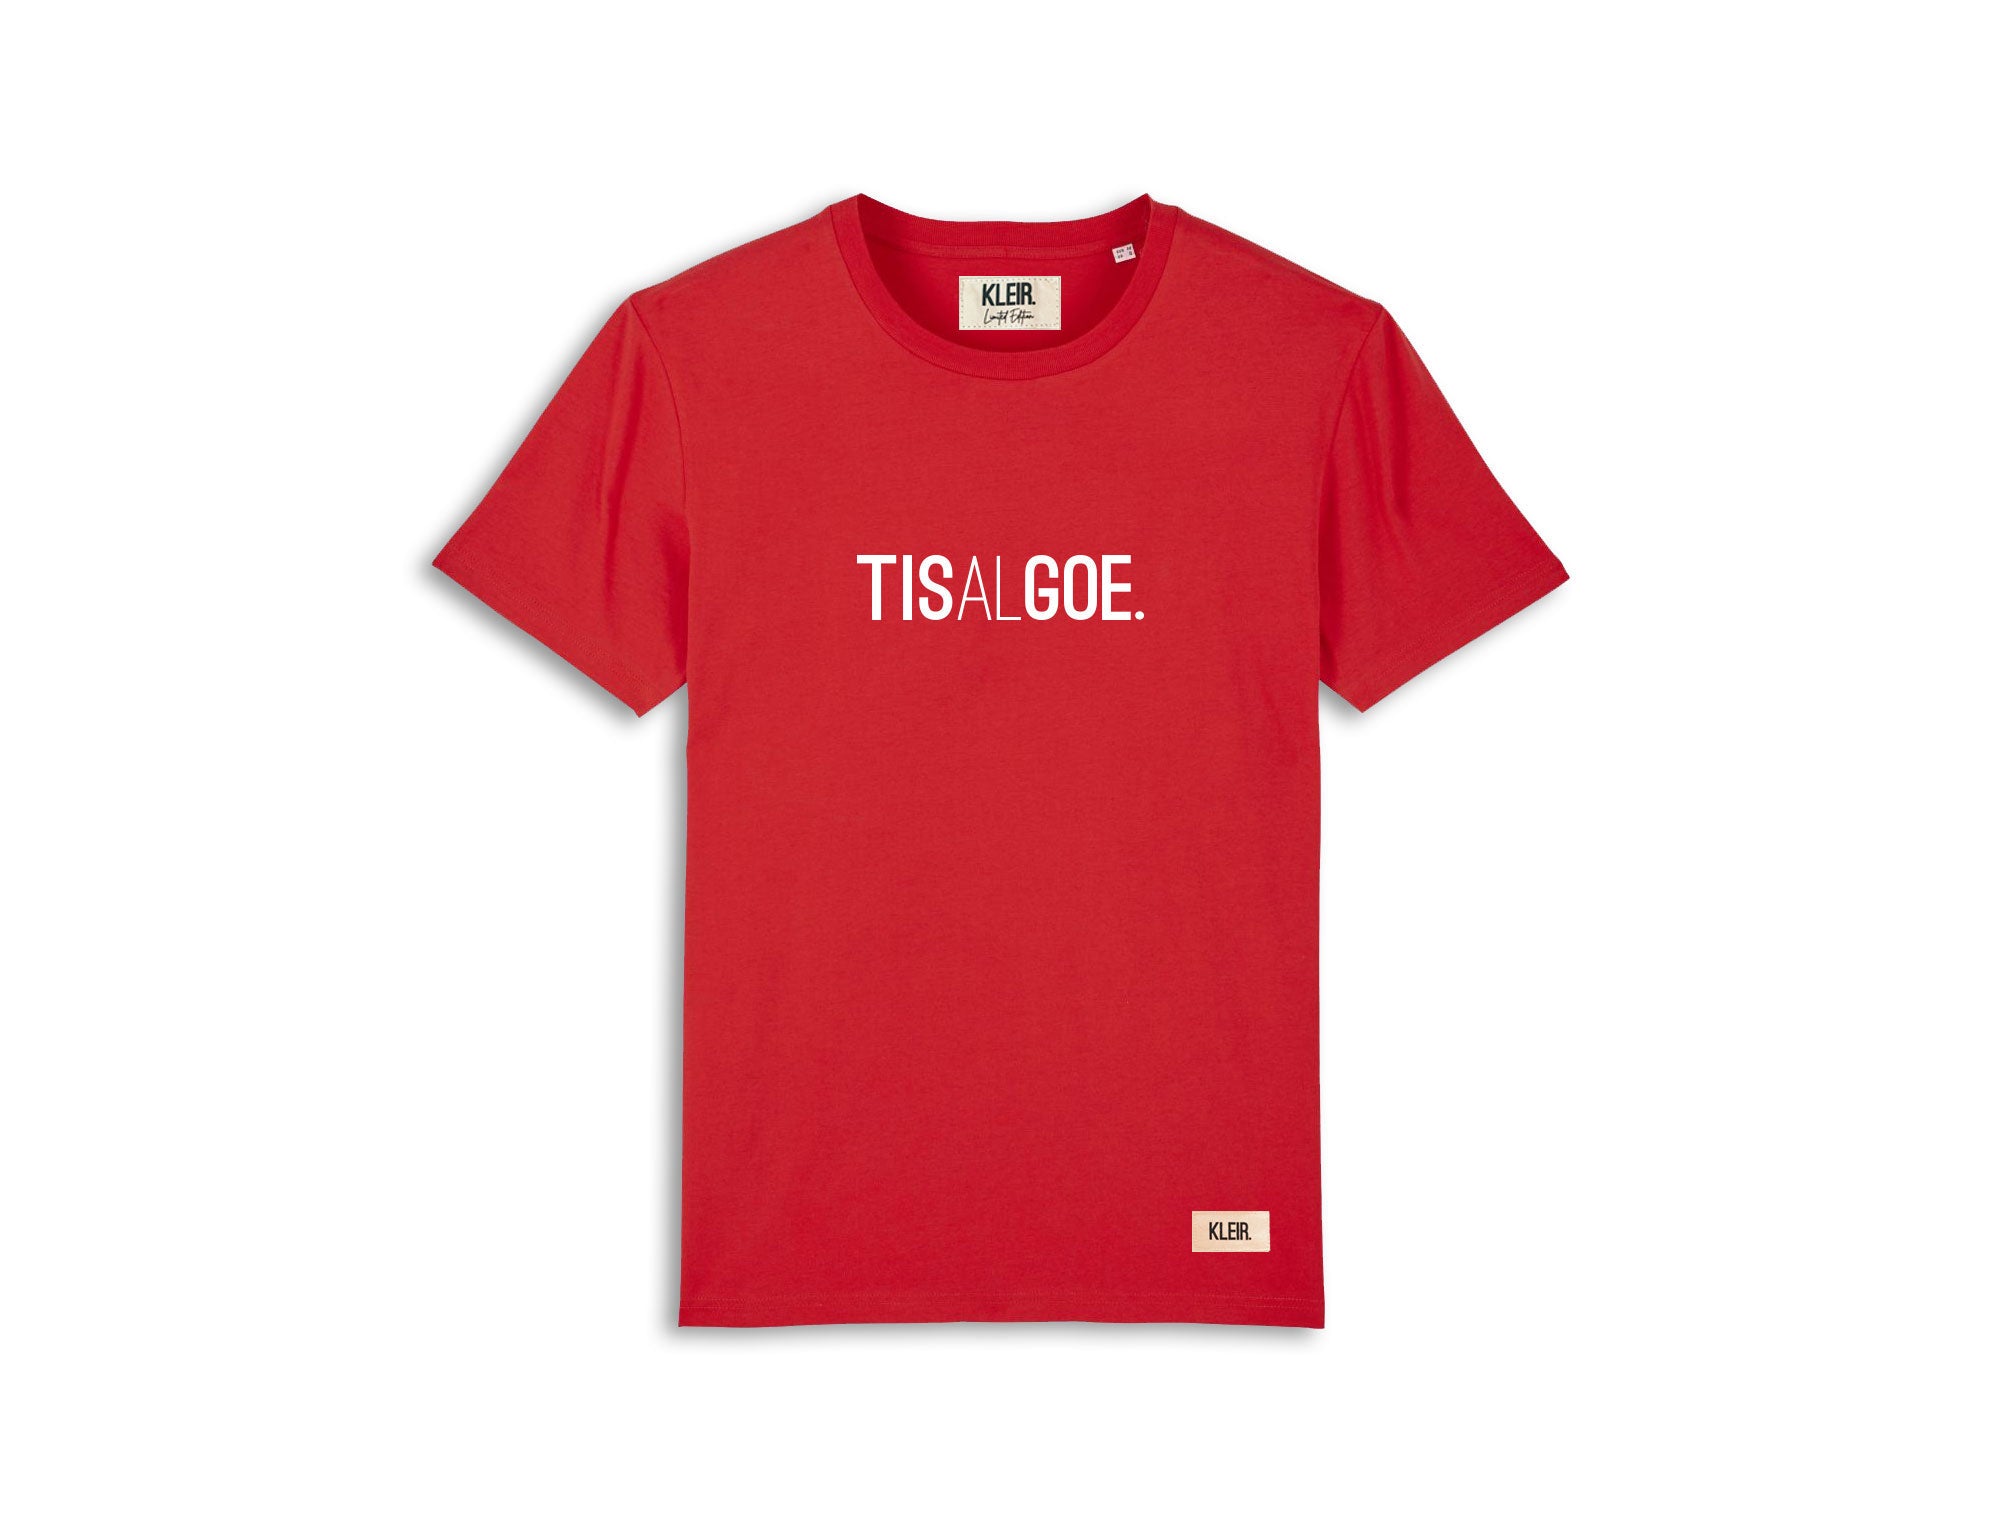 Rode T-shirt met opdruk TISALGOE.